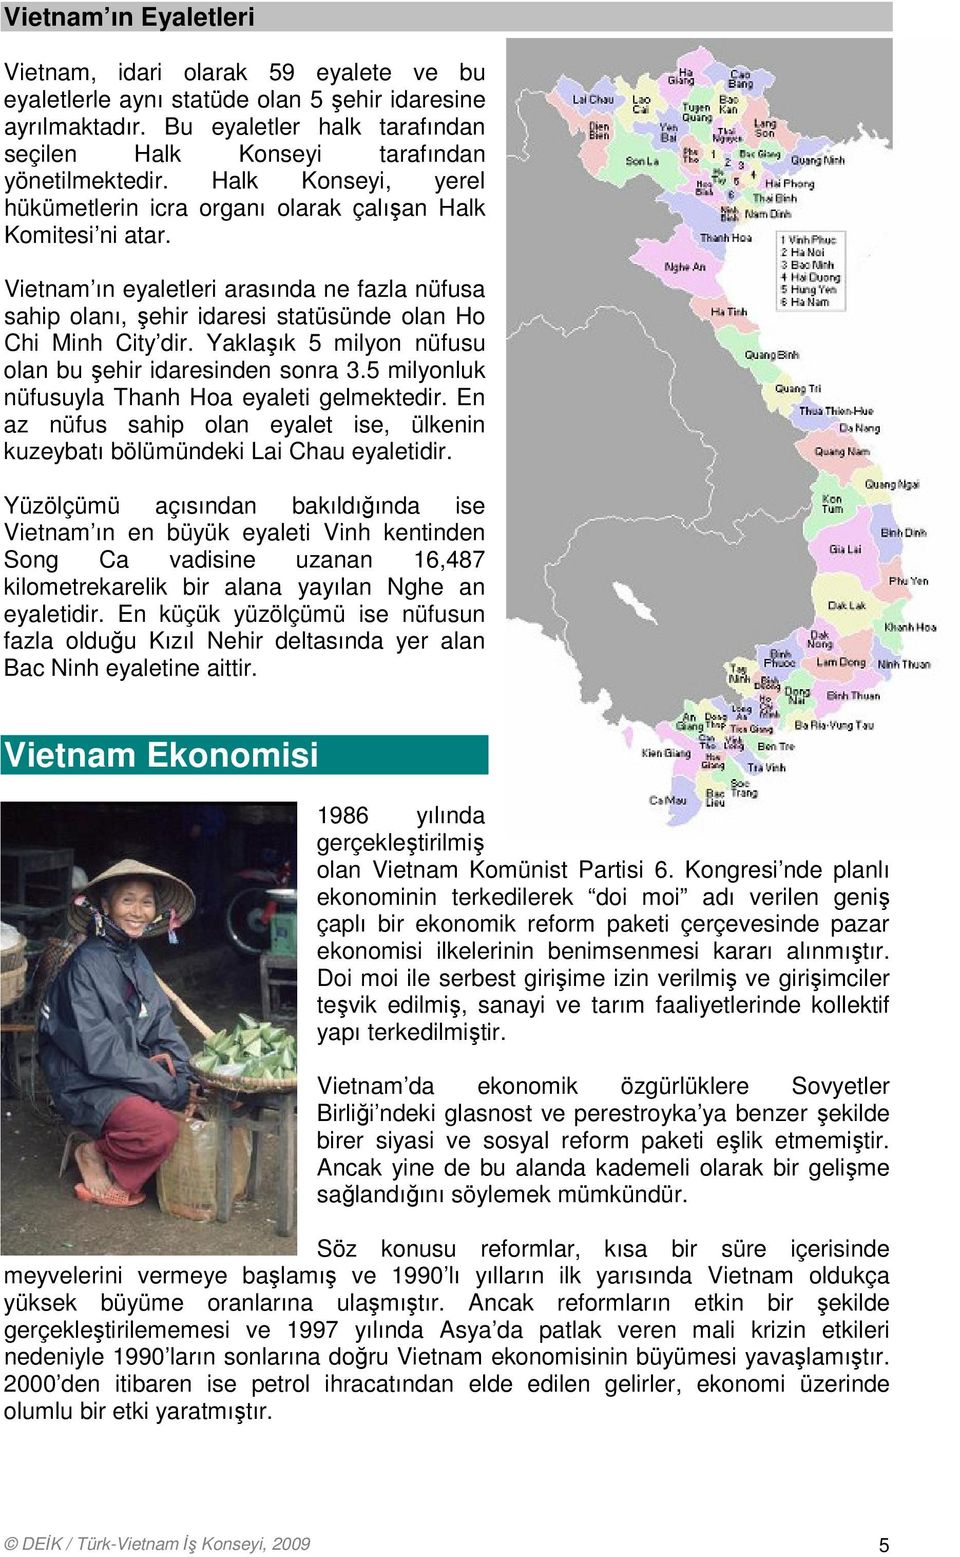 Vietnam ın eyaletleri arasında ne fazla nüfusa sahip olanı, şehir idaresi statüsünde olan Ho Chi Minh City dir. Yaklaşık 5 milyon nüfusu olan bu şehir idaresinden sonra 3.